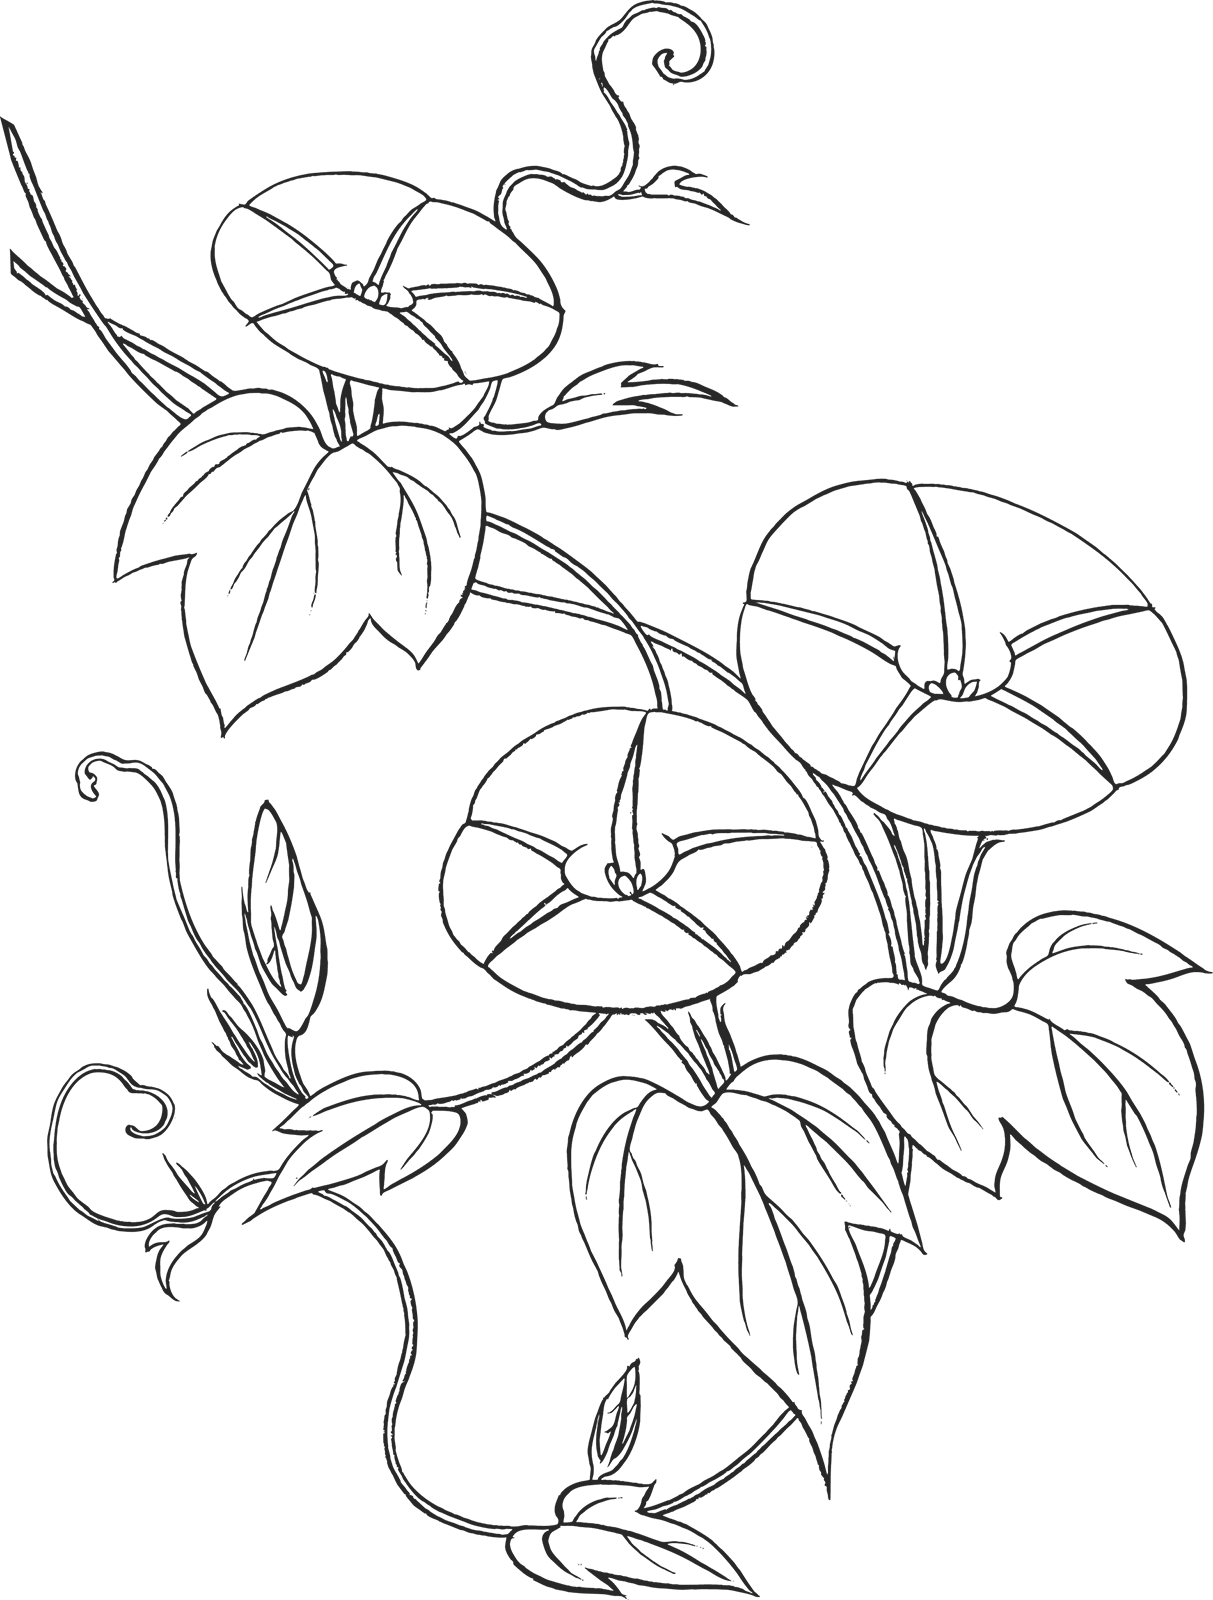 花のイラスト フリー素材 白黒 モノクロno 046 白黒 アサガオ 蔓葉